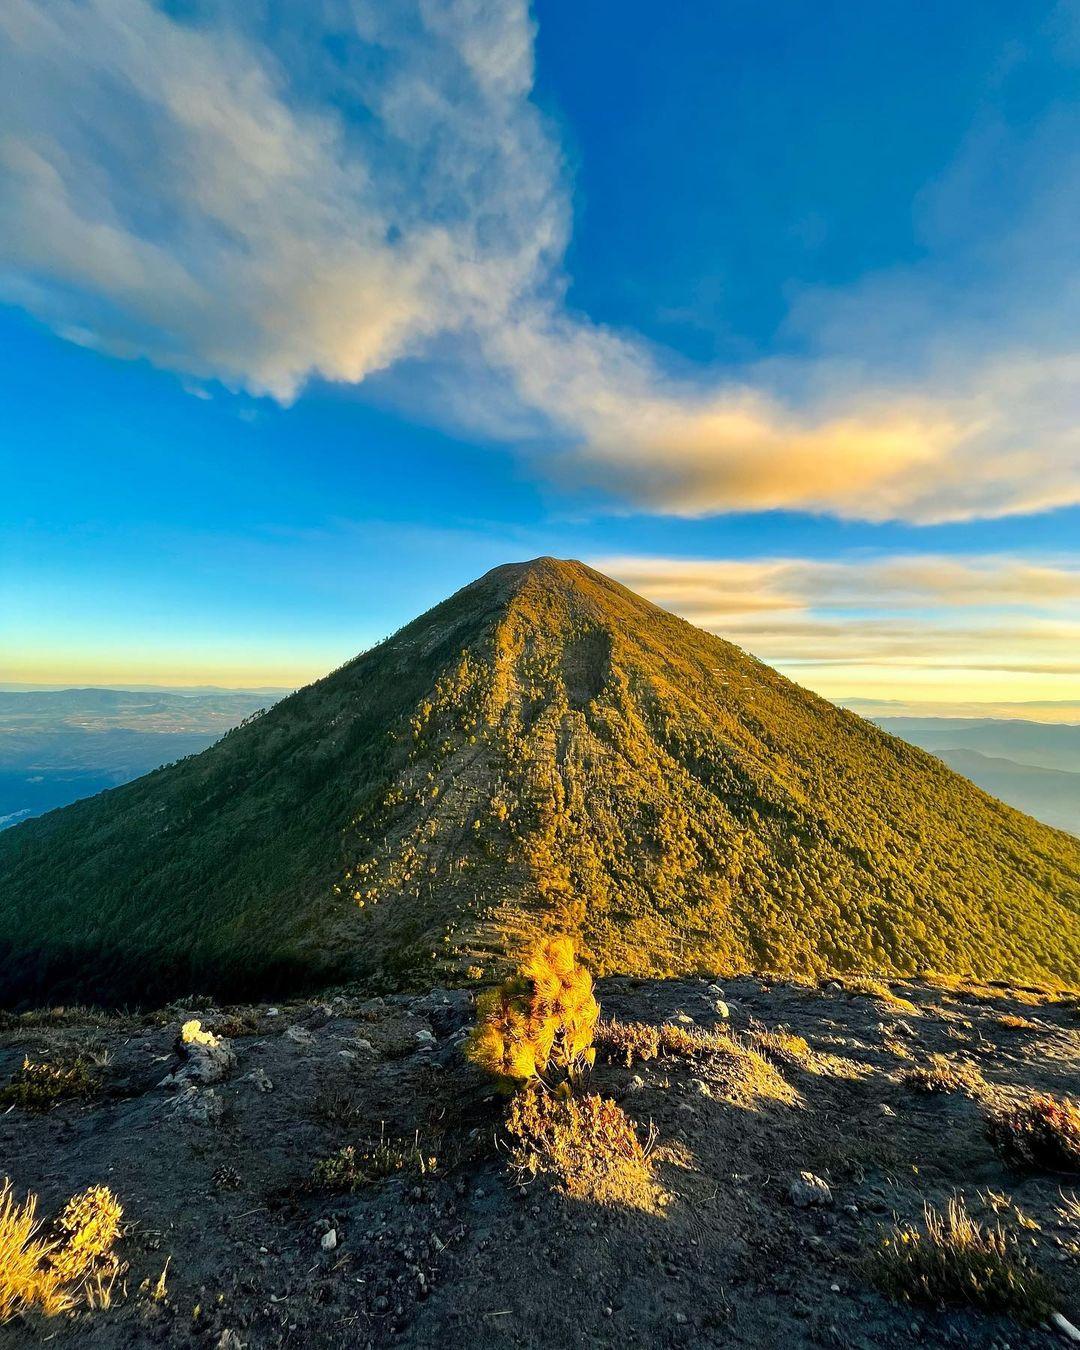 class="content__text"
 #📷 @ruano_o
Observando desde la cima del volcán de fuego al volcán más “Consentido” de Guatemala.
.
.
.
.
.
.
.

————— 
Comparte con nosotros tus publicaciones en instagram con el HT: #MundoChapin o #MundoChapinCom

 #Guatemala 
 